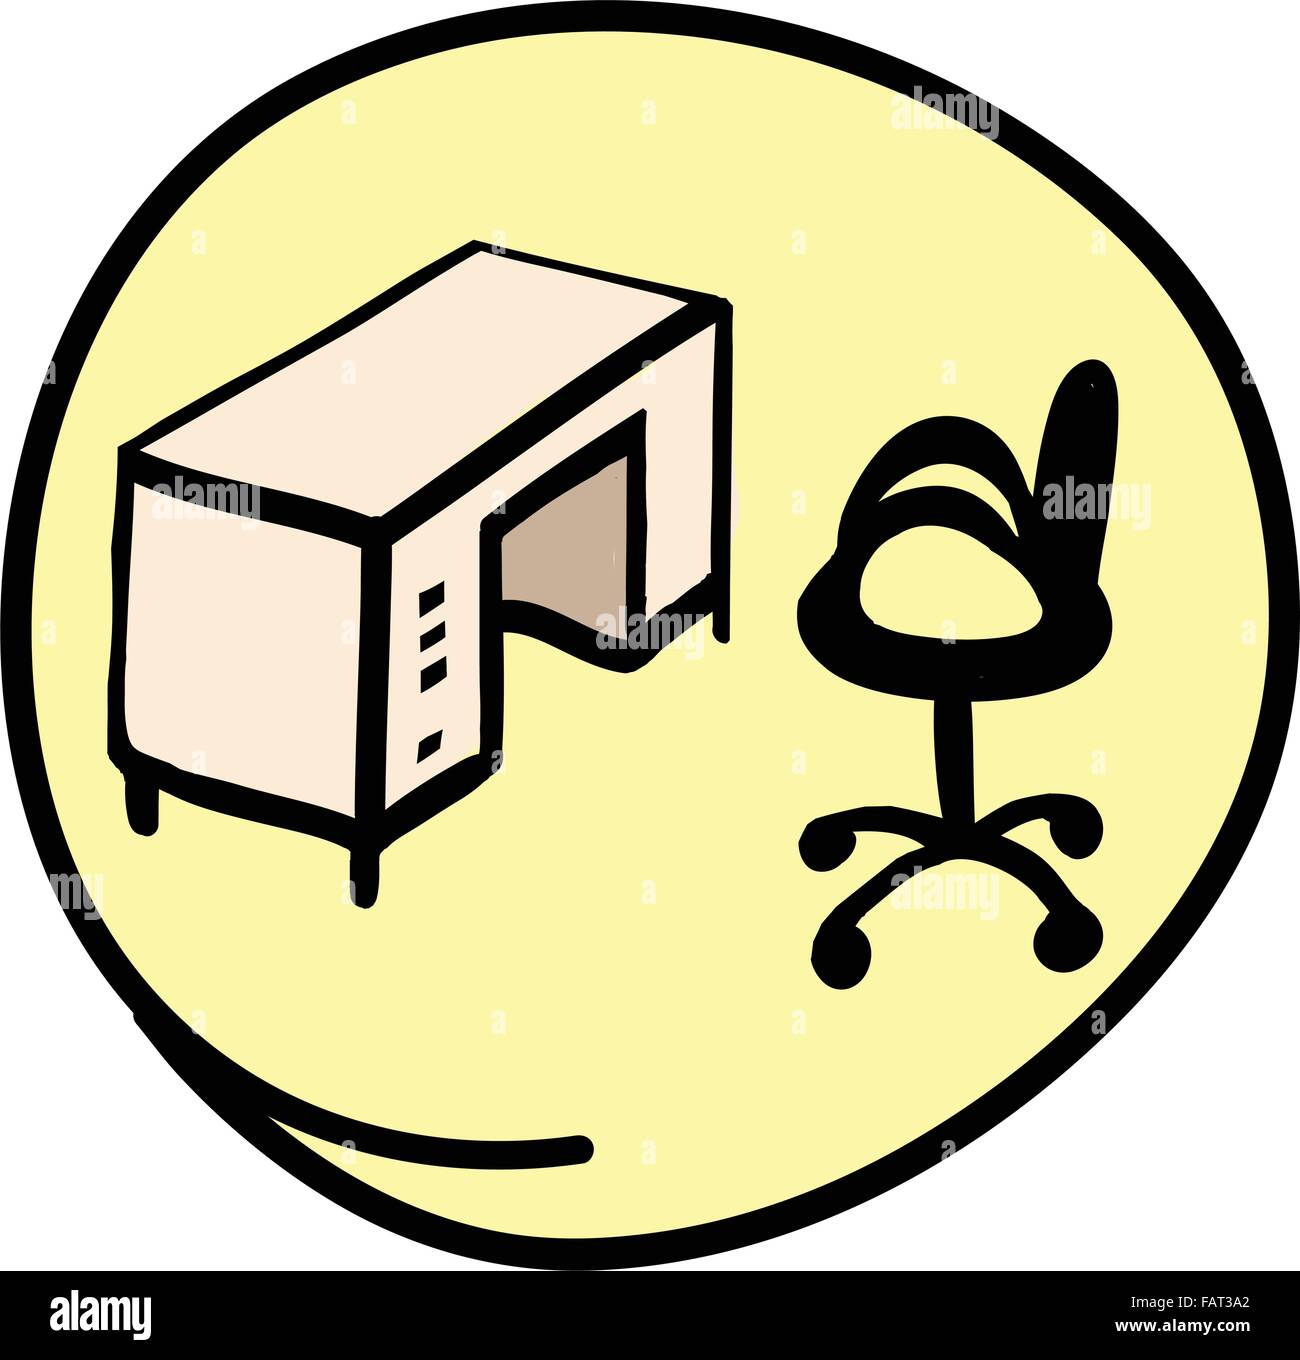 Bürobedarf, A Cartoon Illustration of Office Station mit Stuhl und Tisch im gelben Kreis Rahmen Stock Vektor